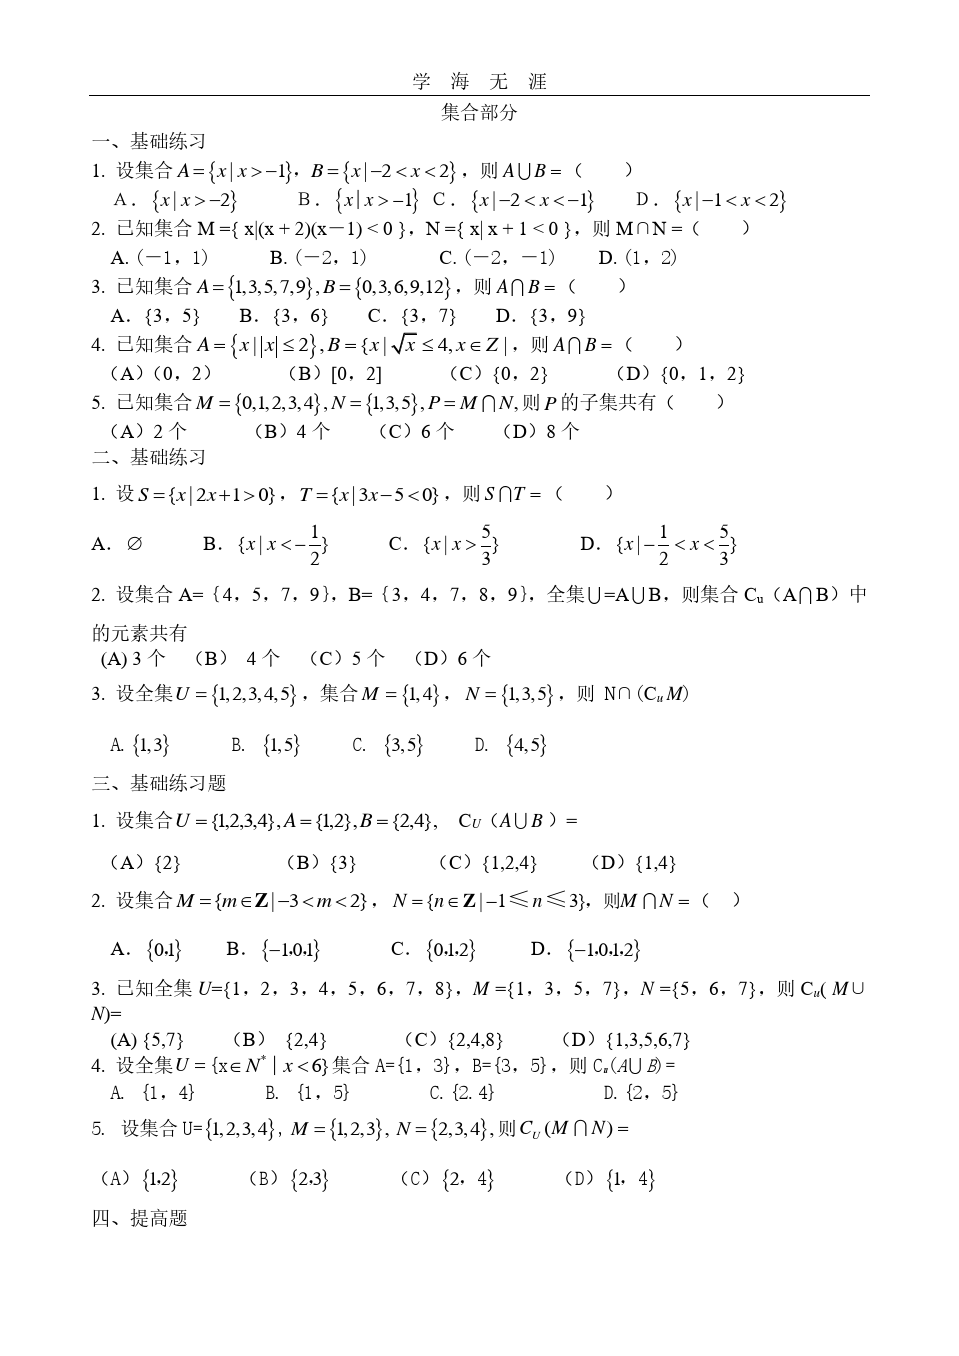 高考文科数学集合习题精选.pdf